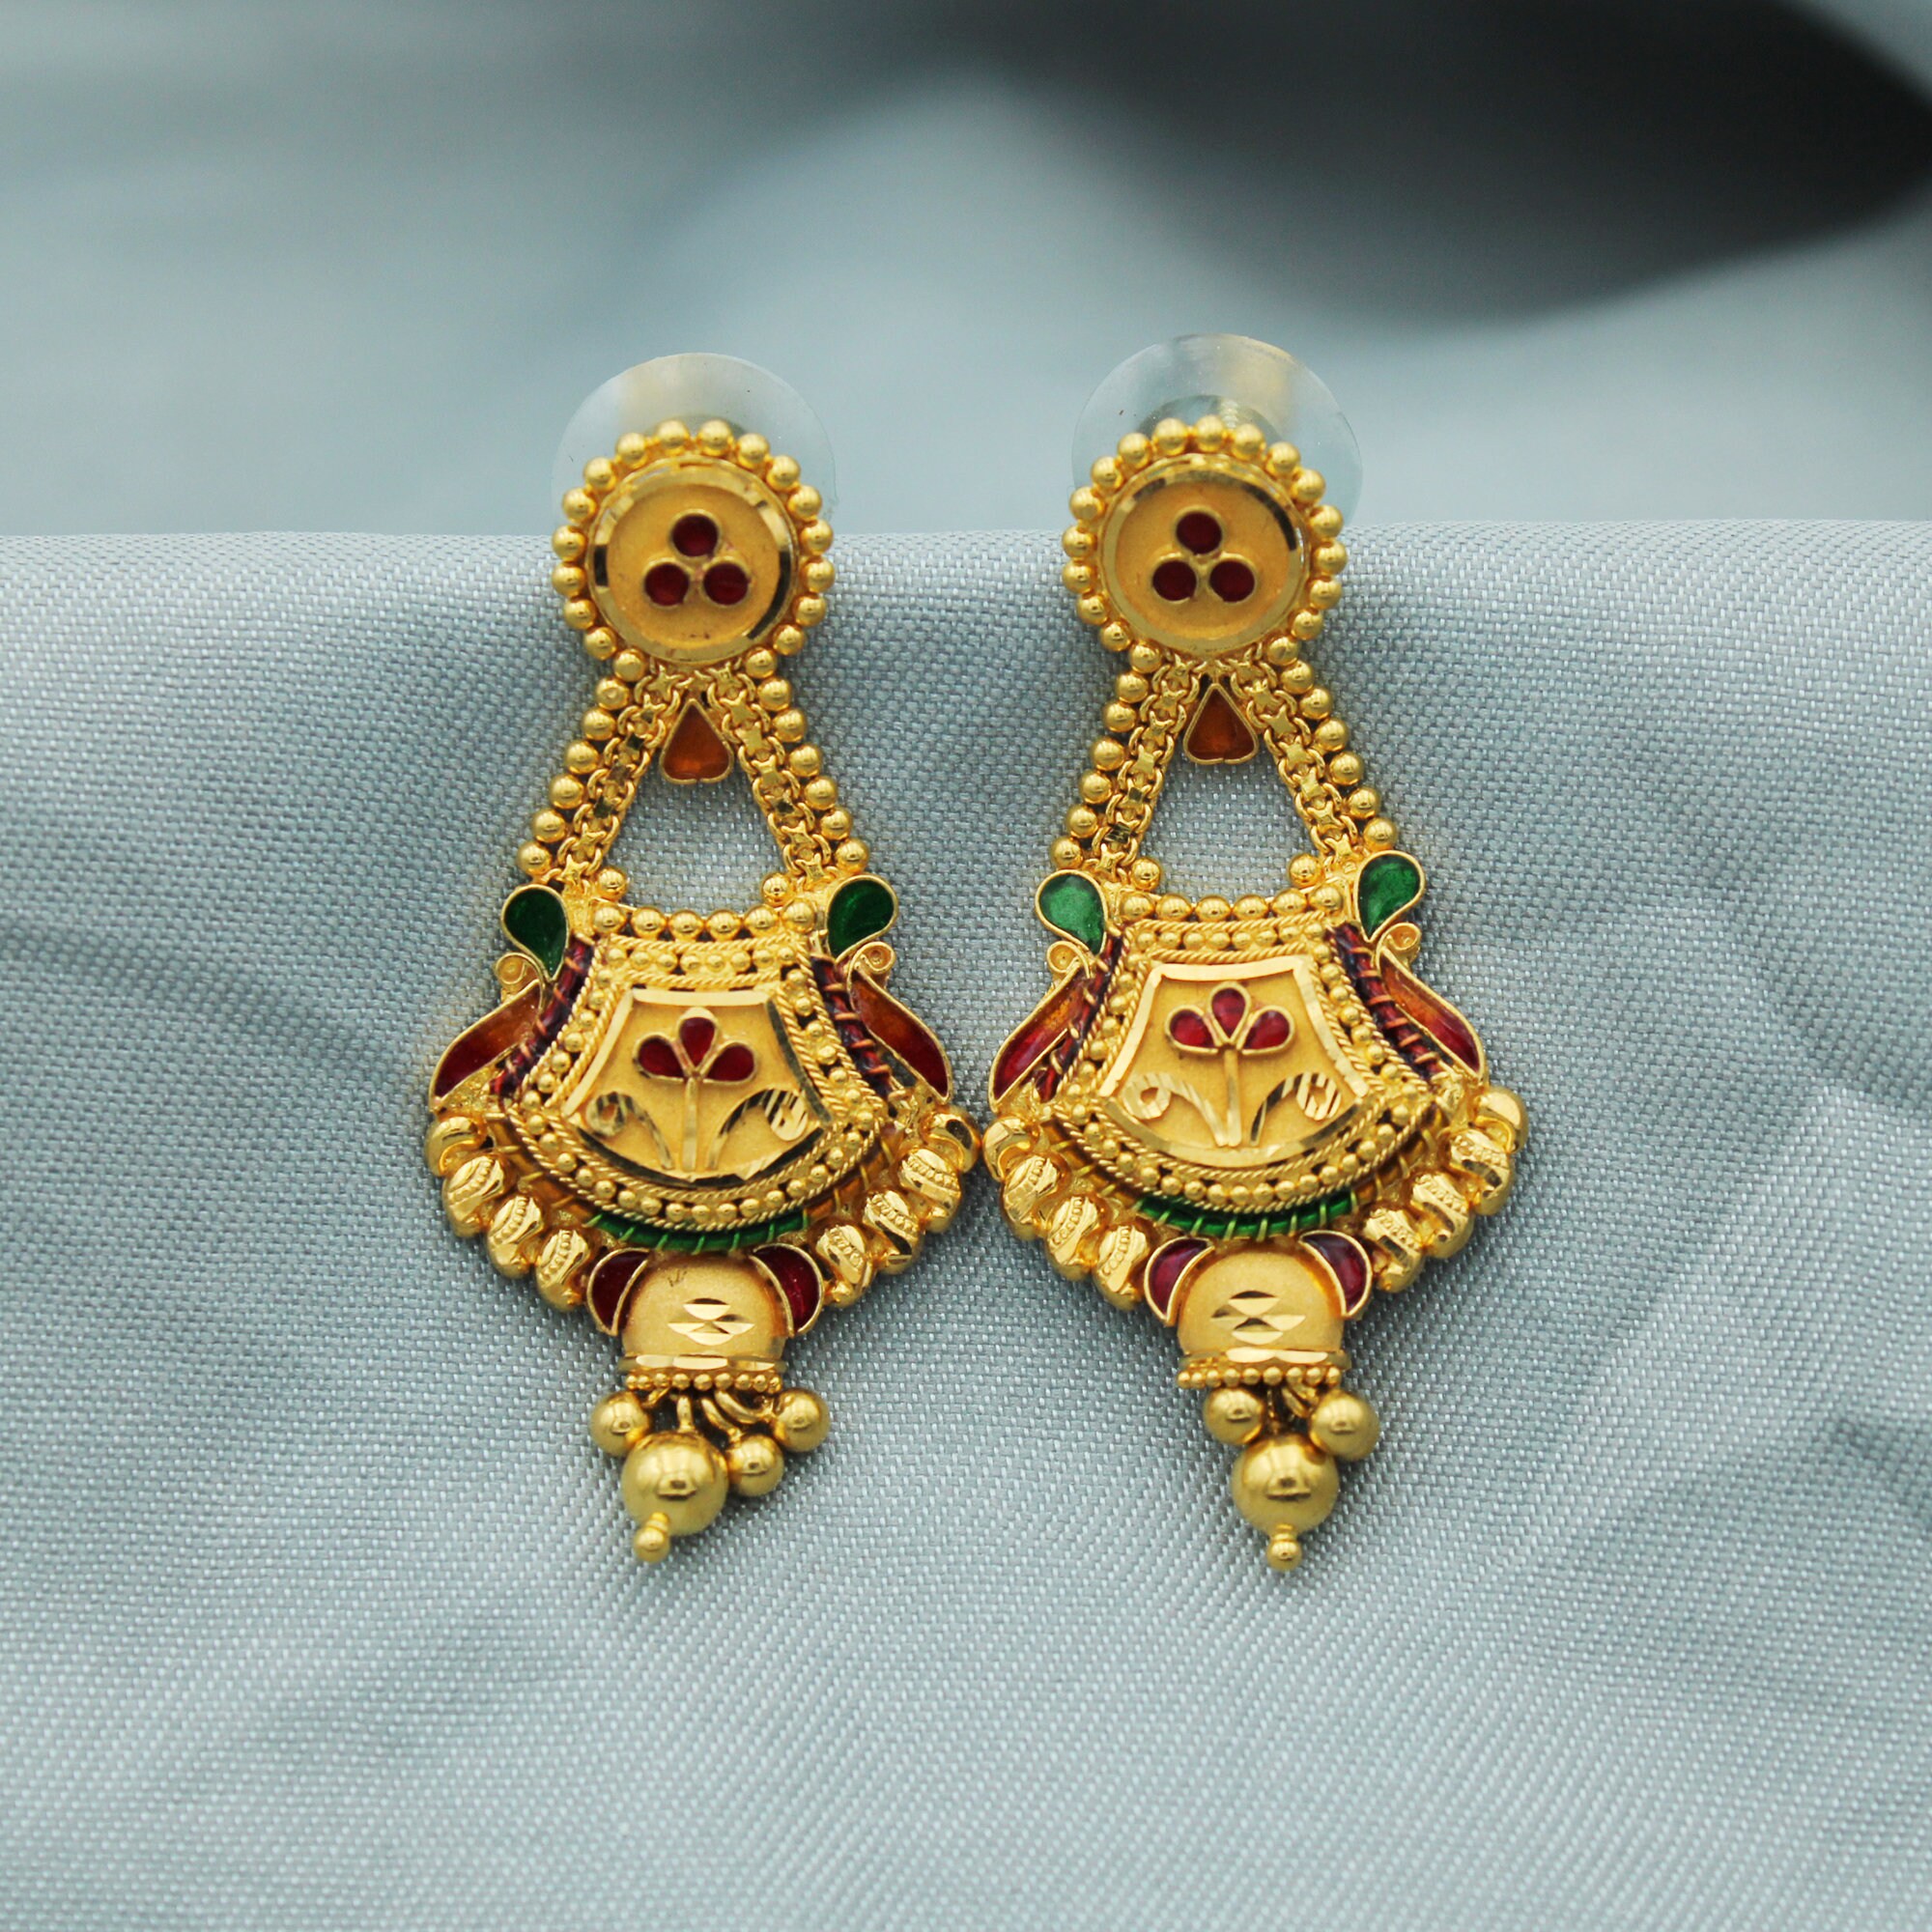 Gold earrings haul alert! Great picks by @thebanghardin from